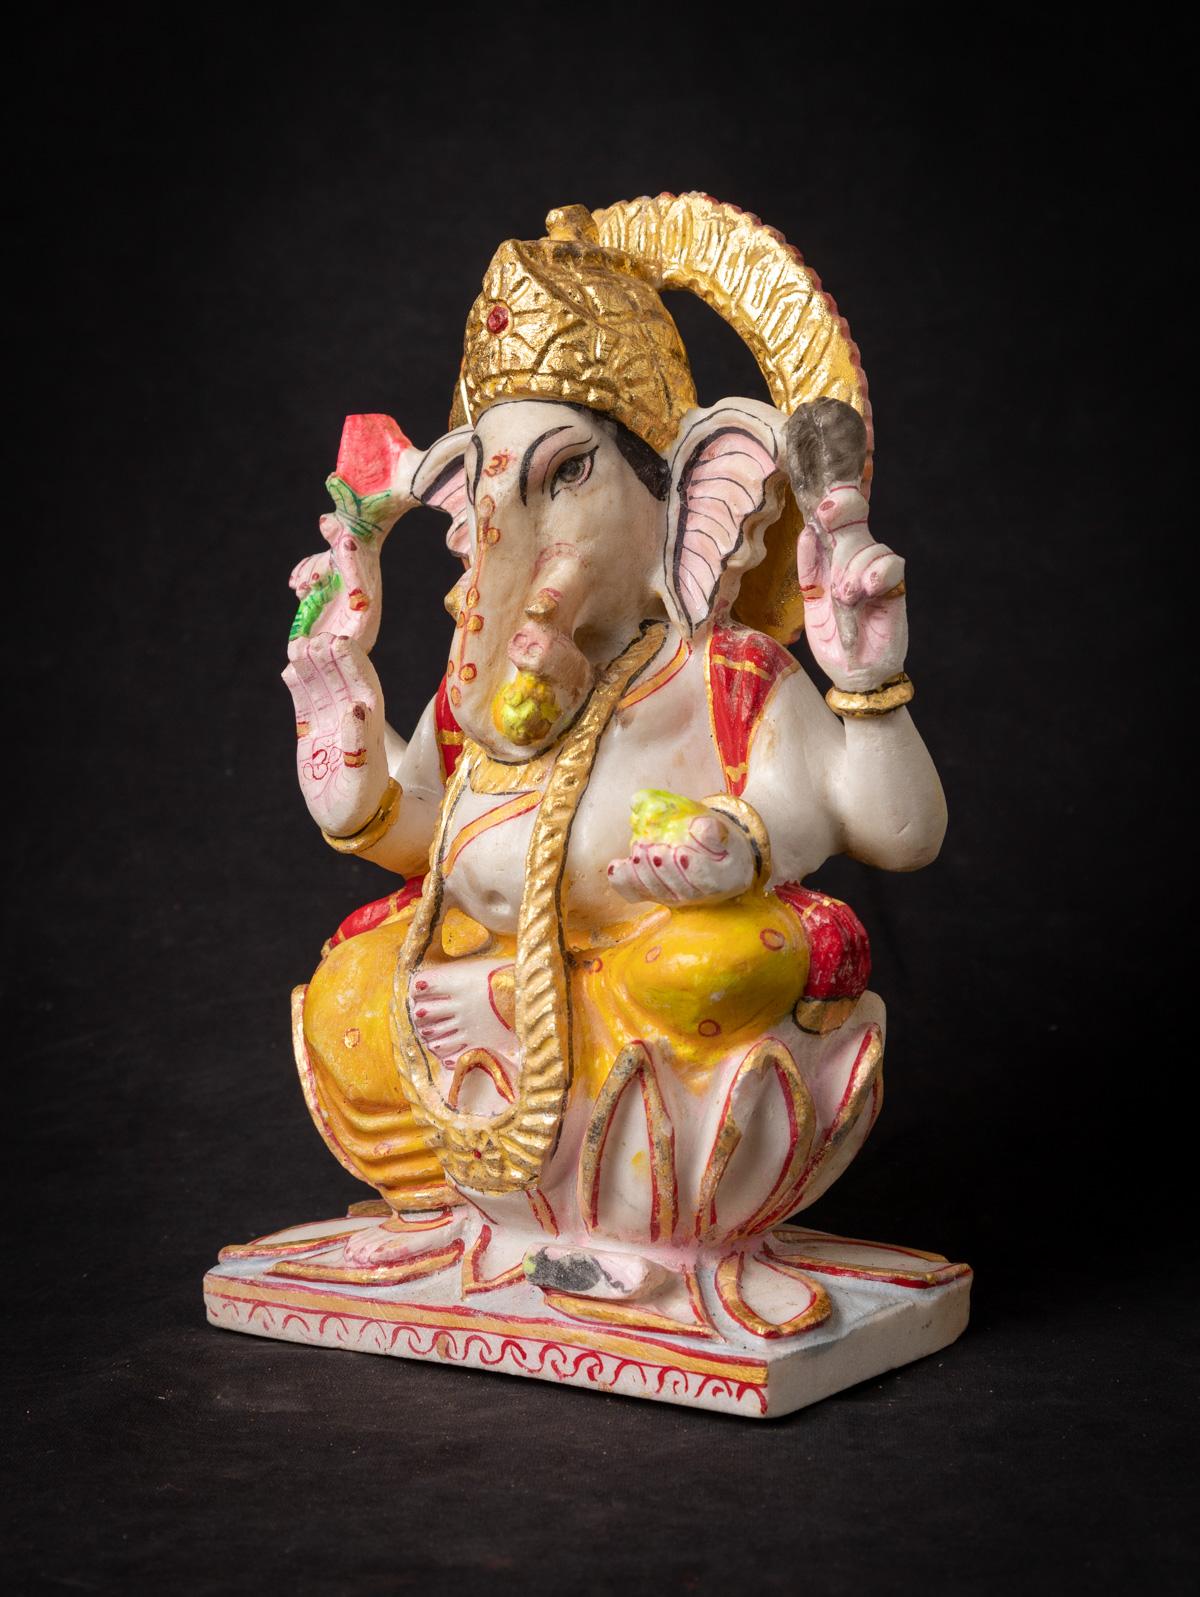 Diese indische Ganesha-Statue aus Marmor ist ein großartiges Kunstwerk, das die Essenz der elefantenköpfigen Gottheit Lord Ganesha verkörpert. Sie ist aus Marmor gefertigt und hat eine Höhe von 28,5 cm, eine Breite von 17,8 cm und eine Tiefe von 9